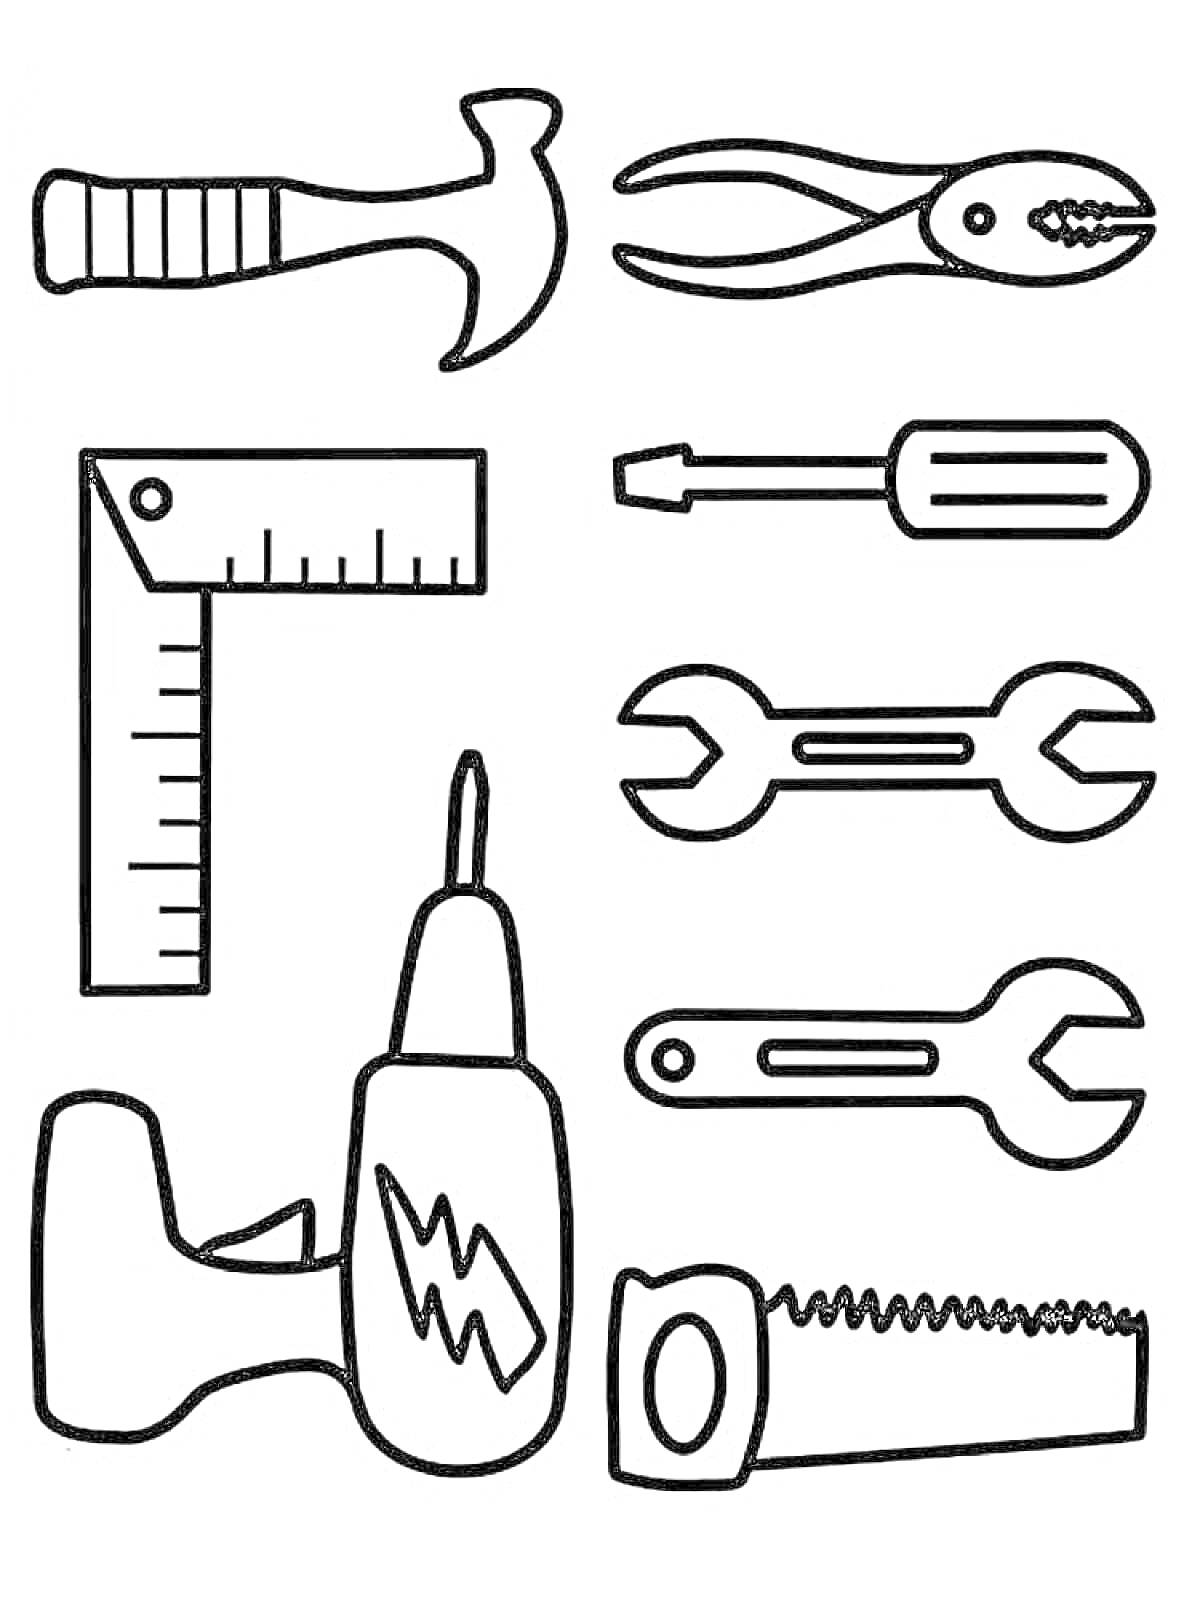 Раскраска с инструментами для детей - молоток, плоскогубцы, угольник, отвёртка, гаечные ключи, дрель, ножовка